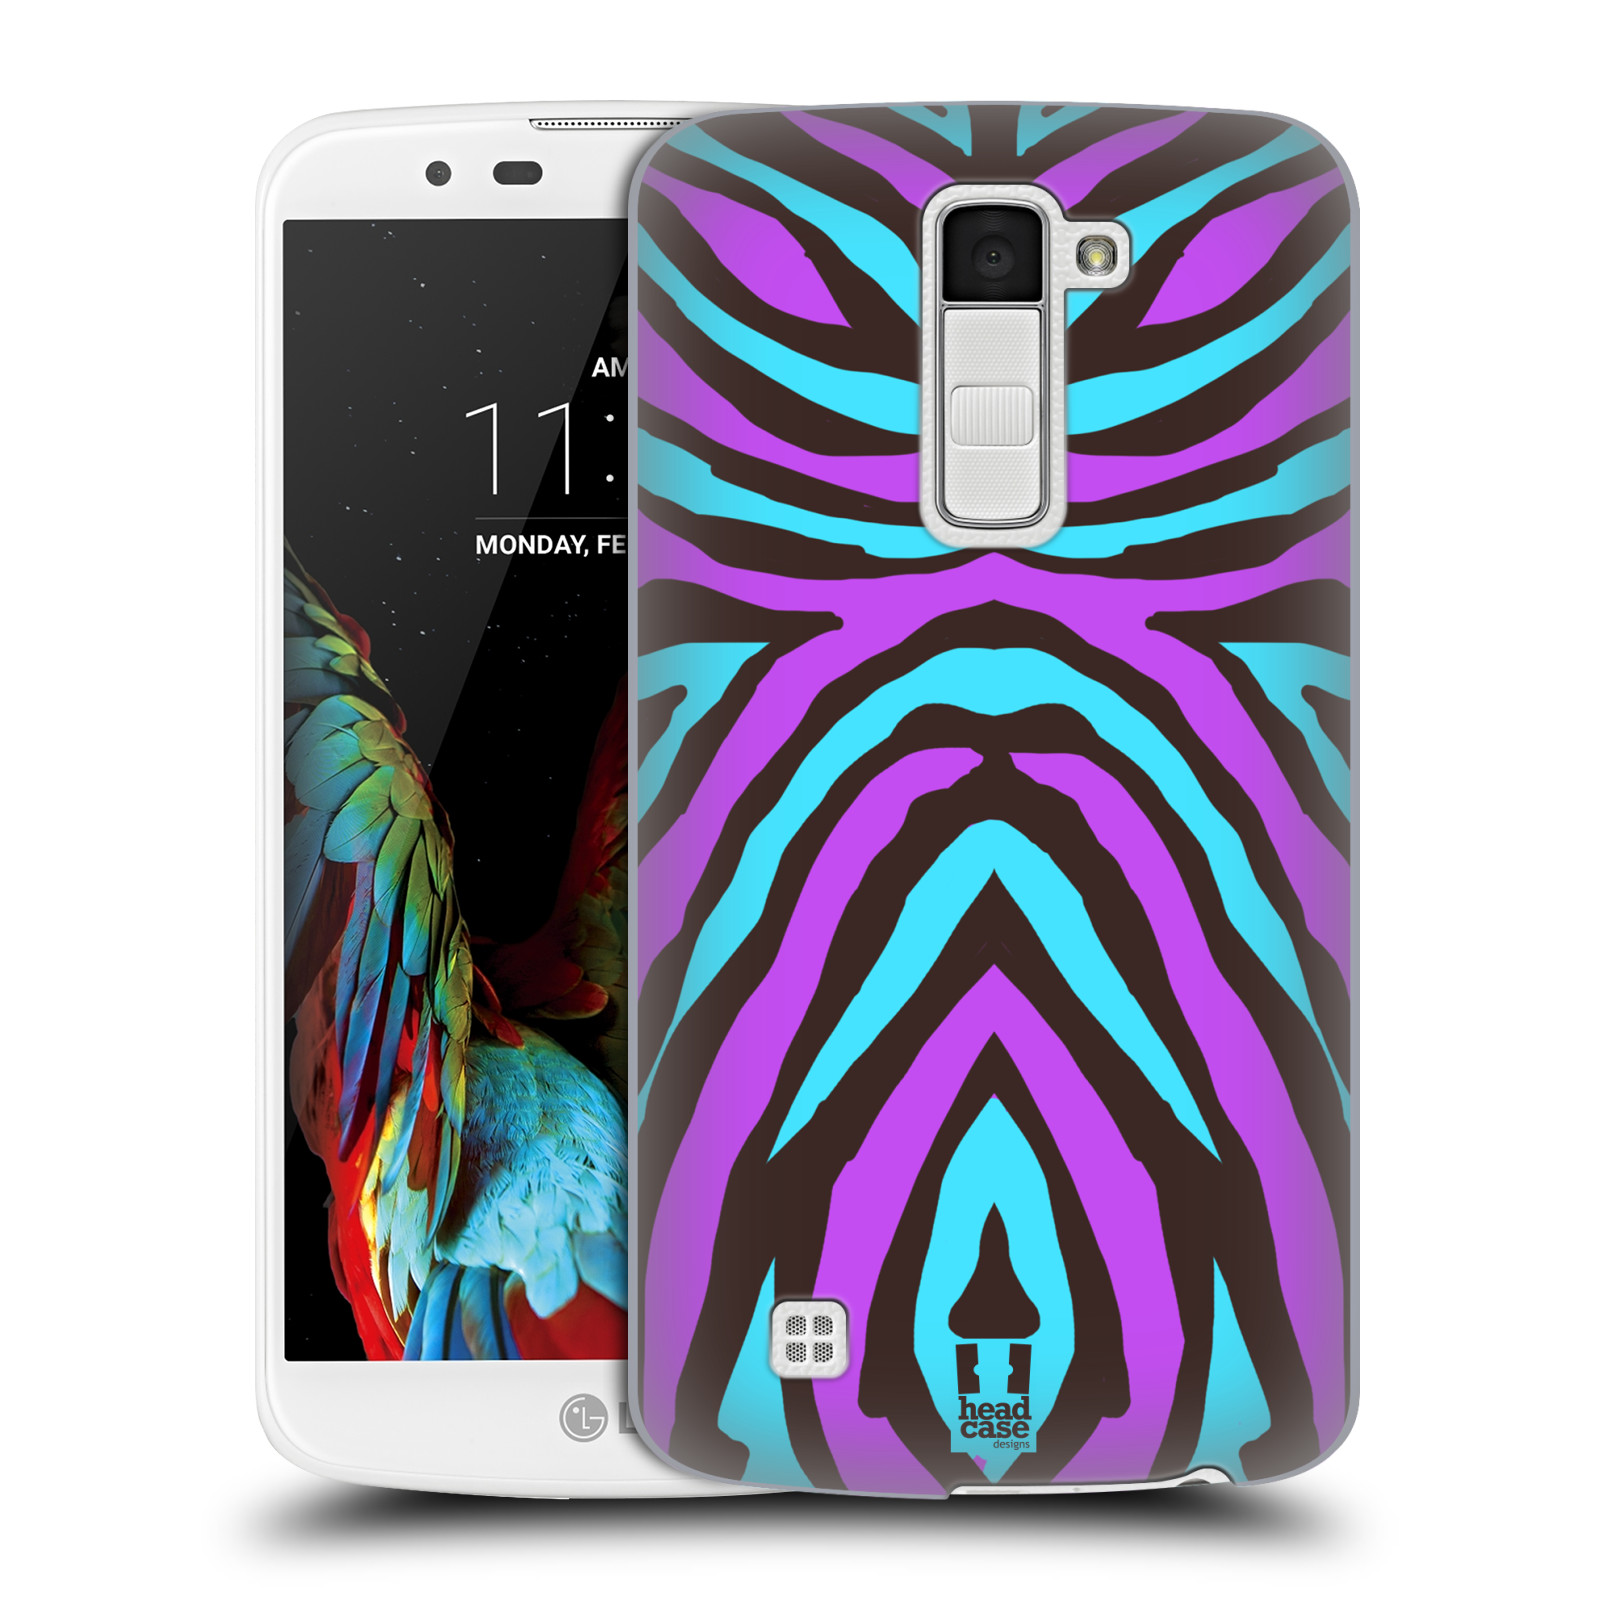 HEAD CASE plastový obal na mobil LG K10 vzor Divočina zvíře 2 bláznivé pruhy fialová a modrá